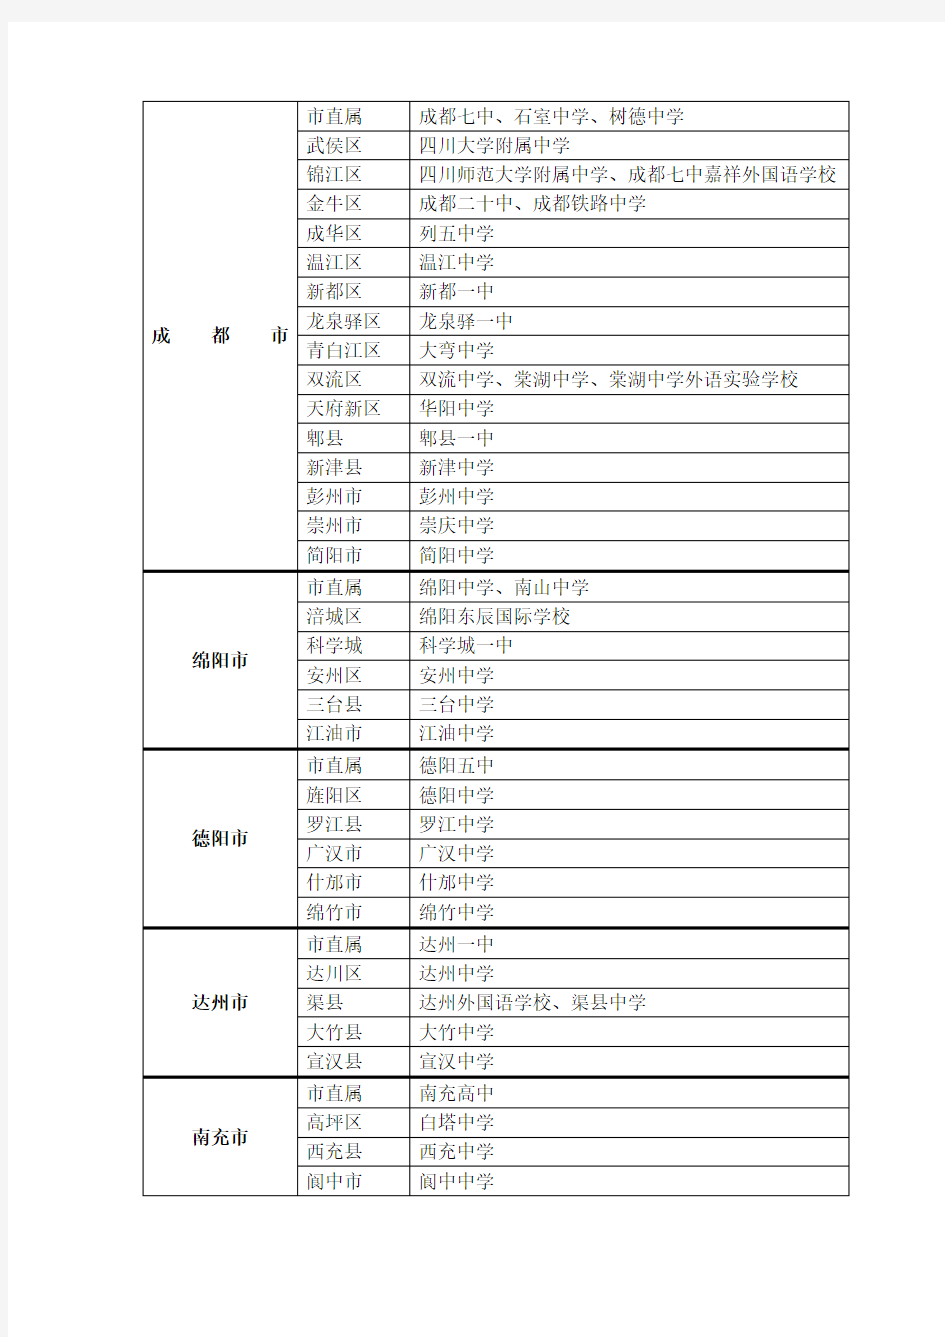 四川省一级示范性普通高中名单(206)